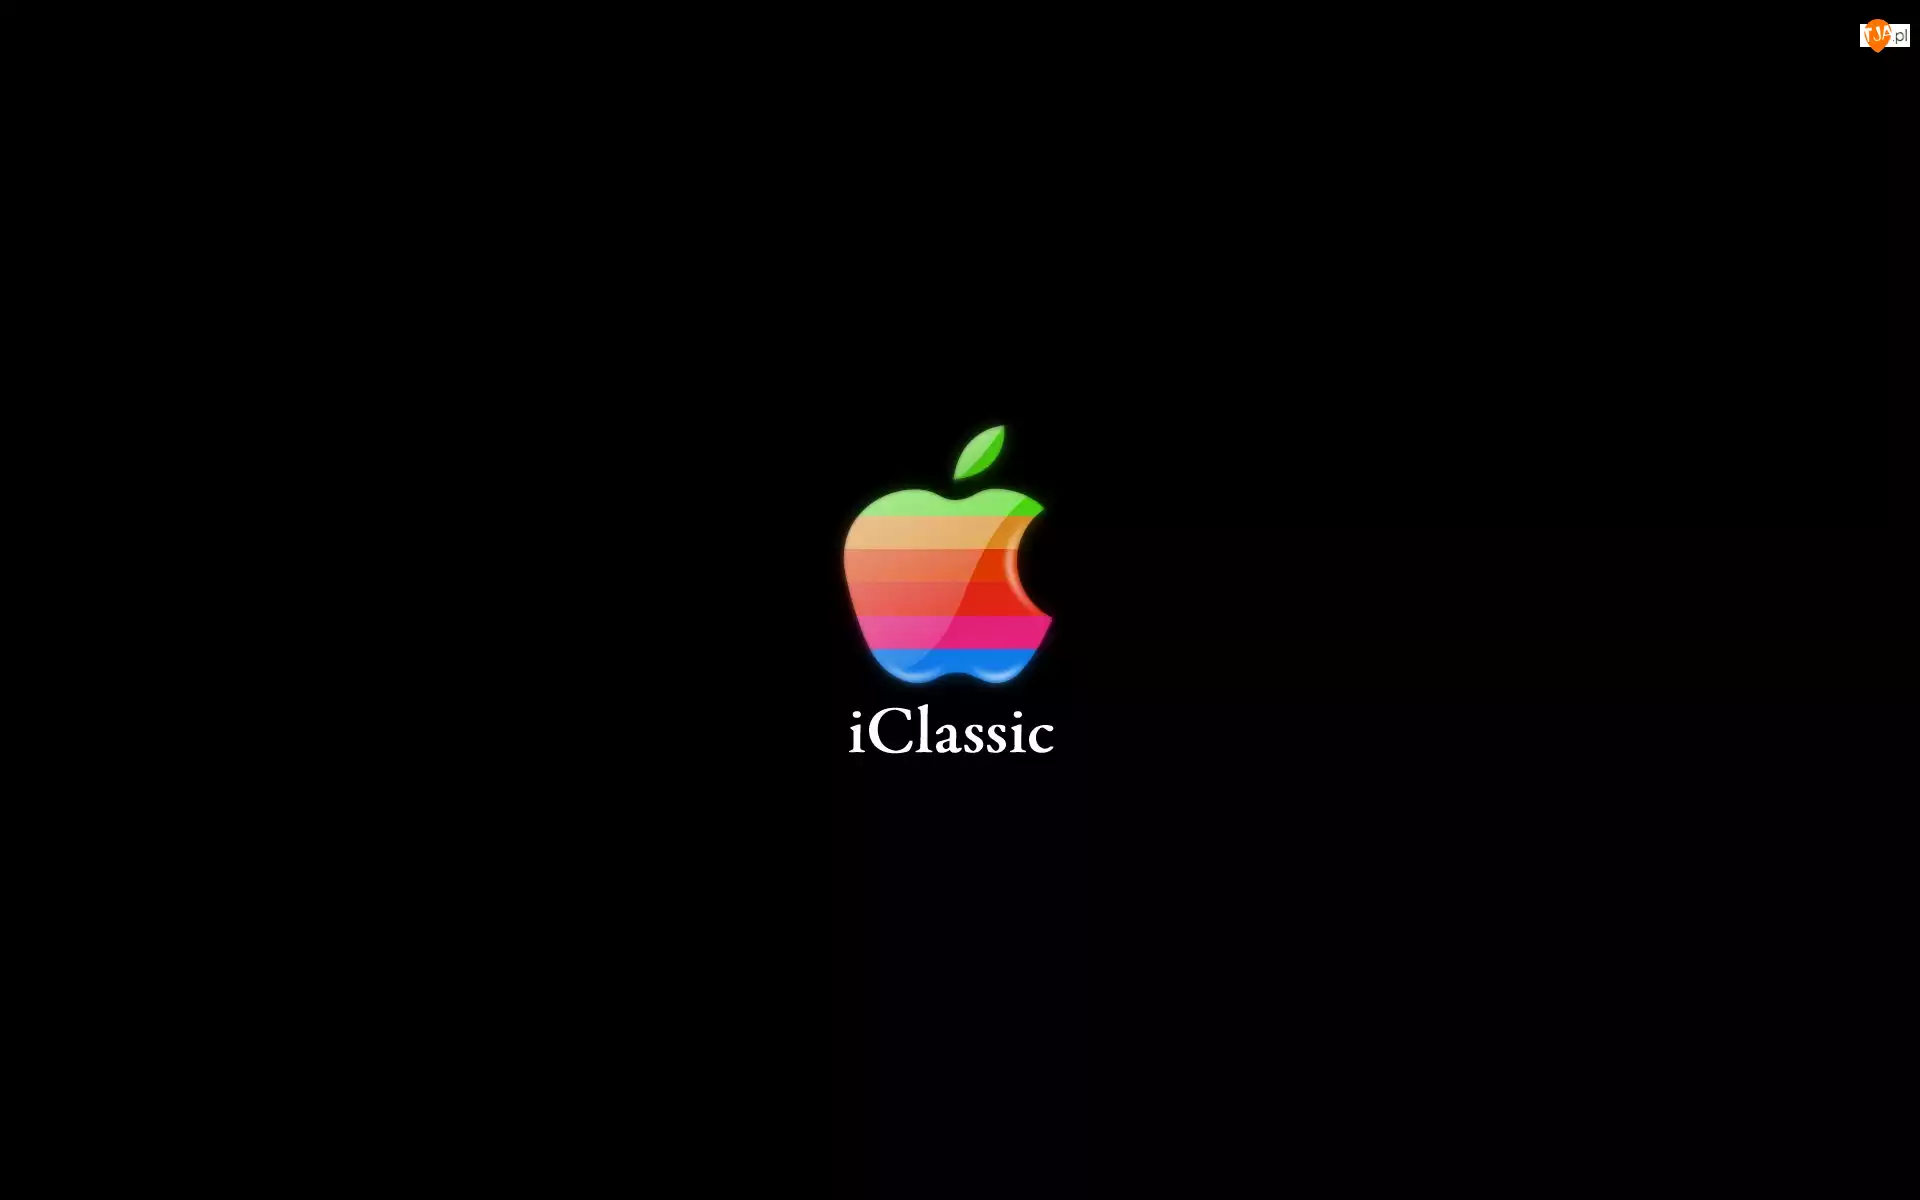 IClassic, Apple